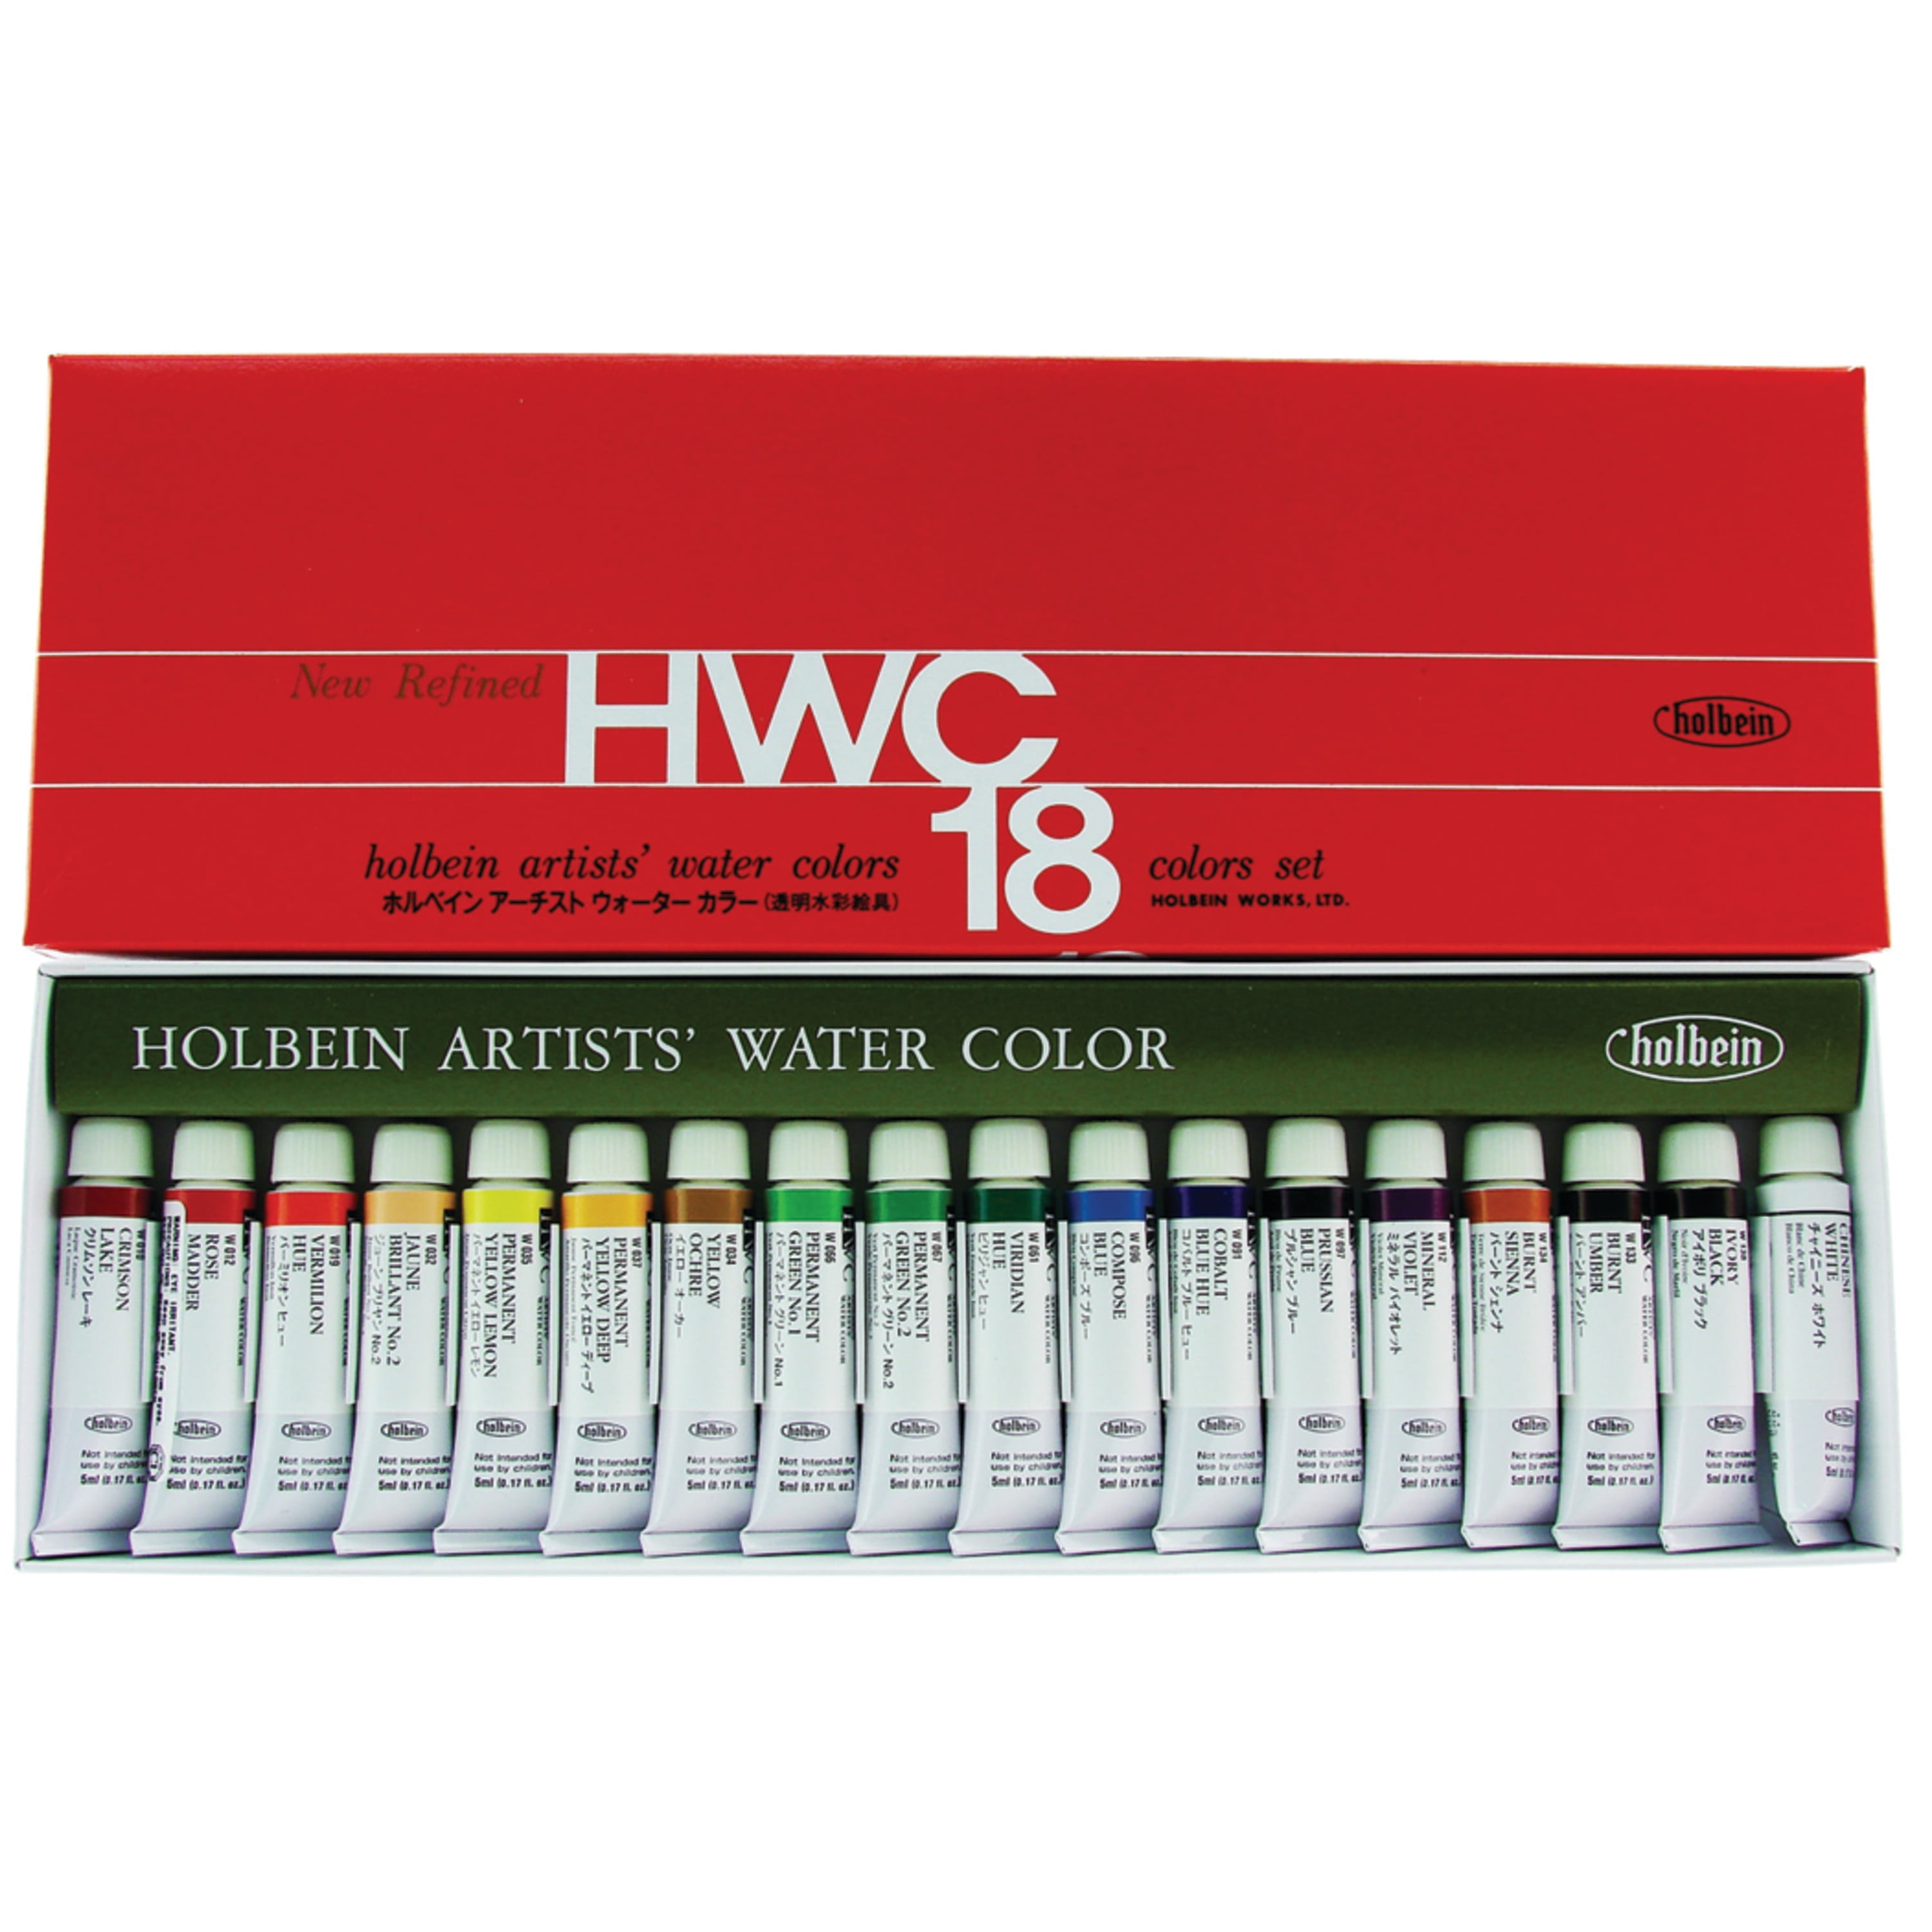 16 Color Watercolor Paint Strips - Basic Supplies - 12 Pieces